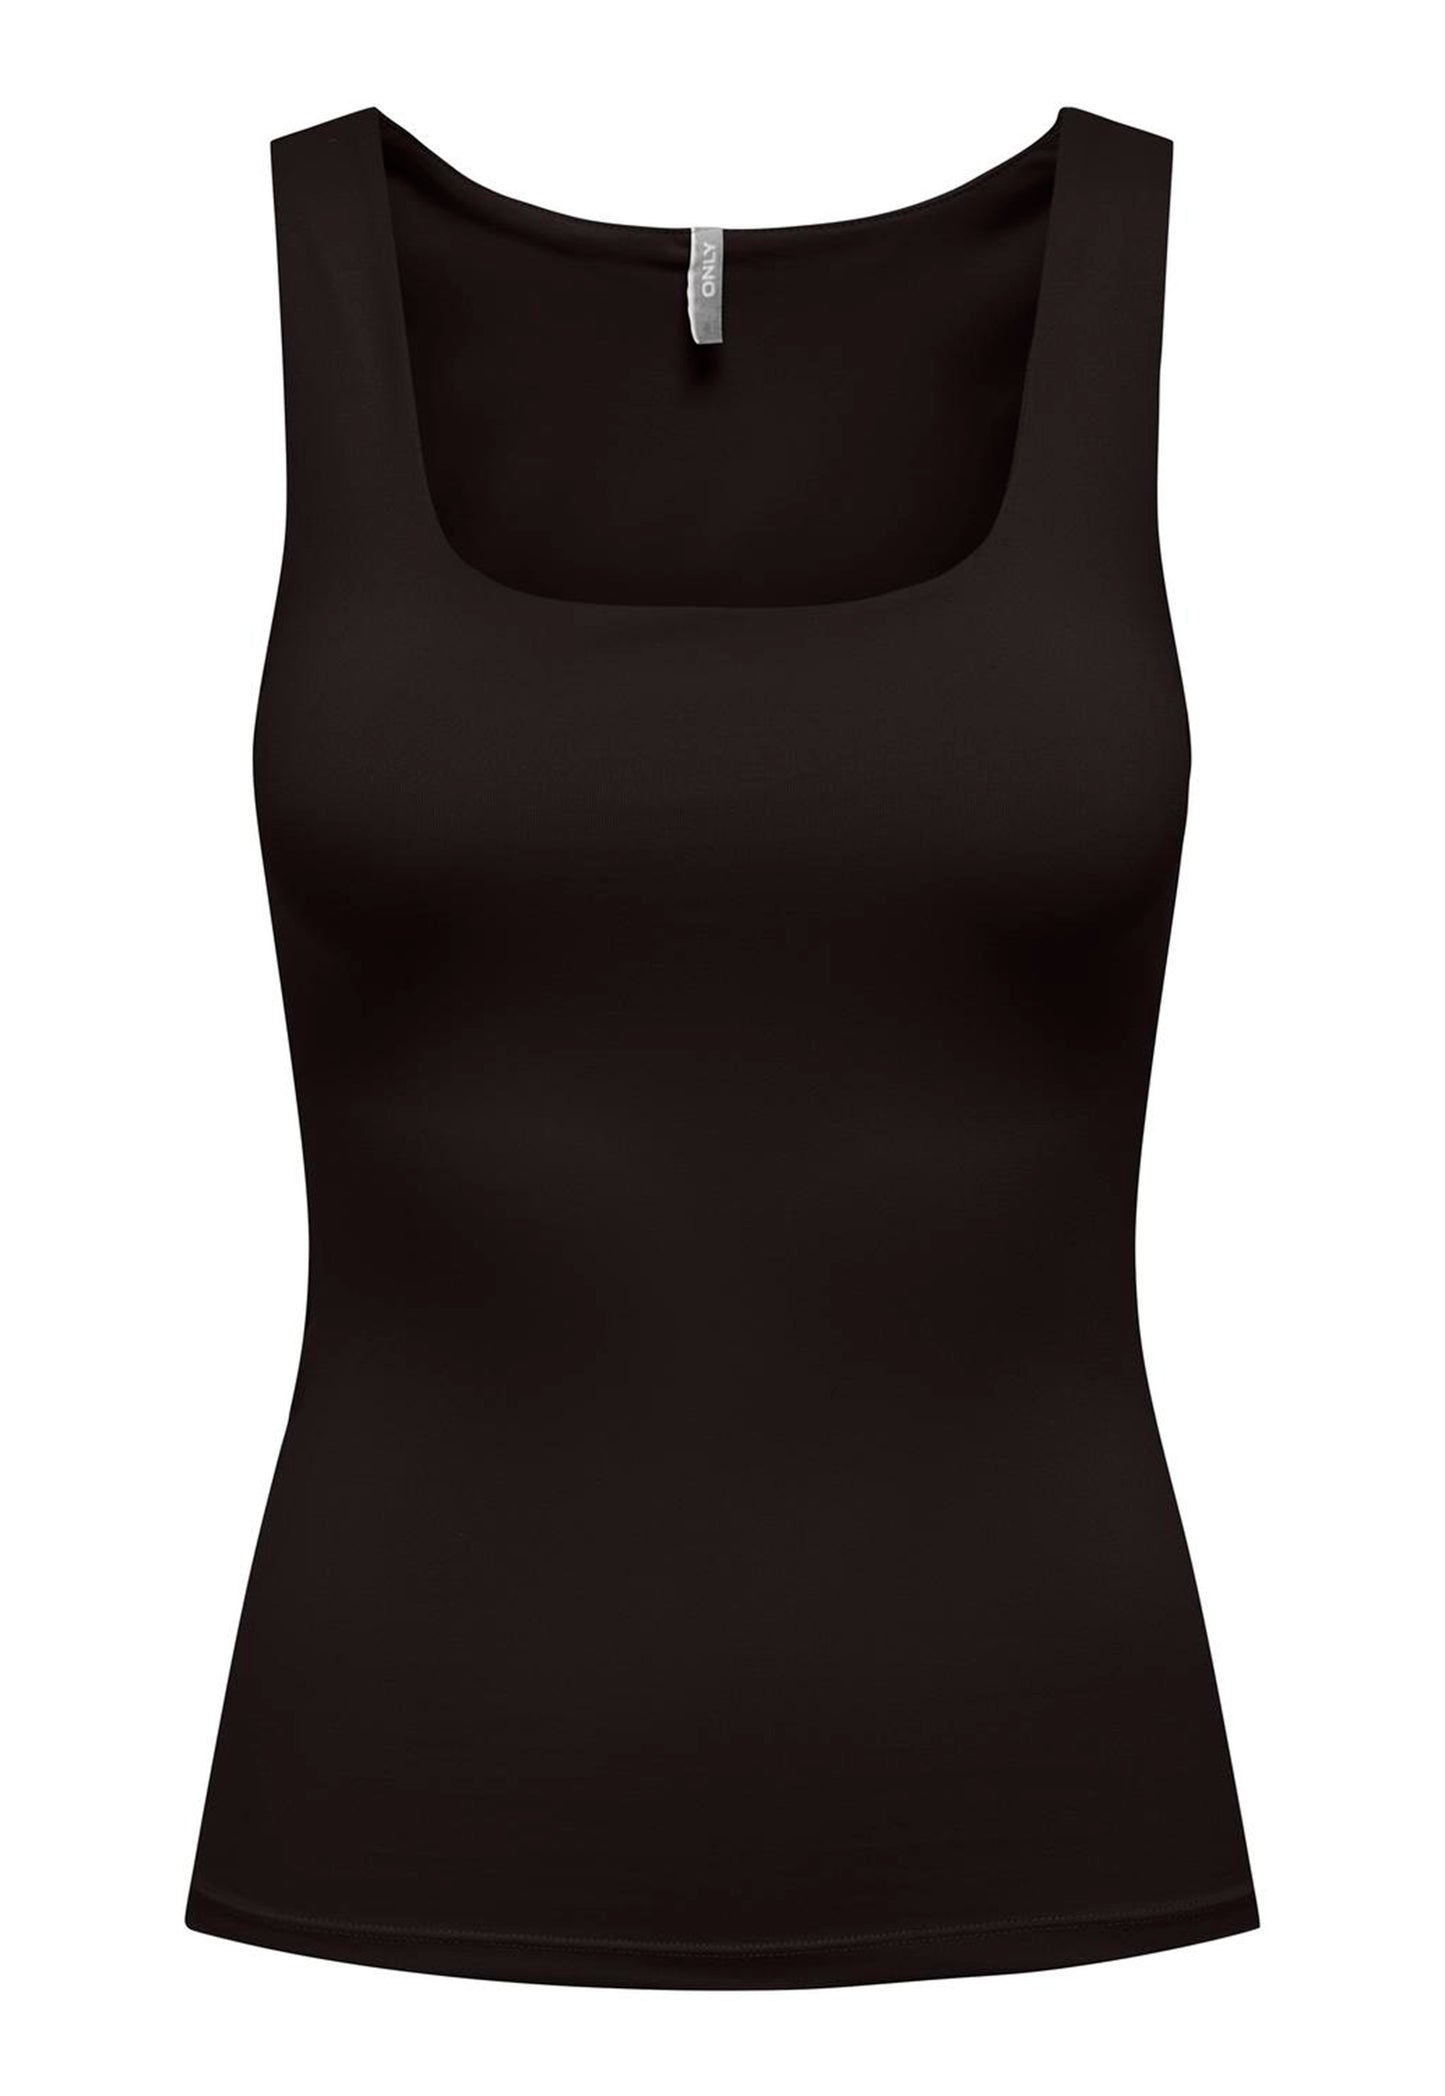 KUN dobbeltlags stretch-vendbar top med firkantet halsudskæring i sort - One Nation-tøj